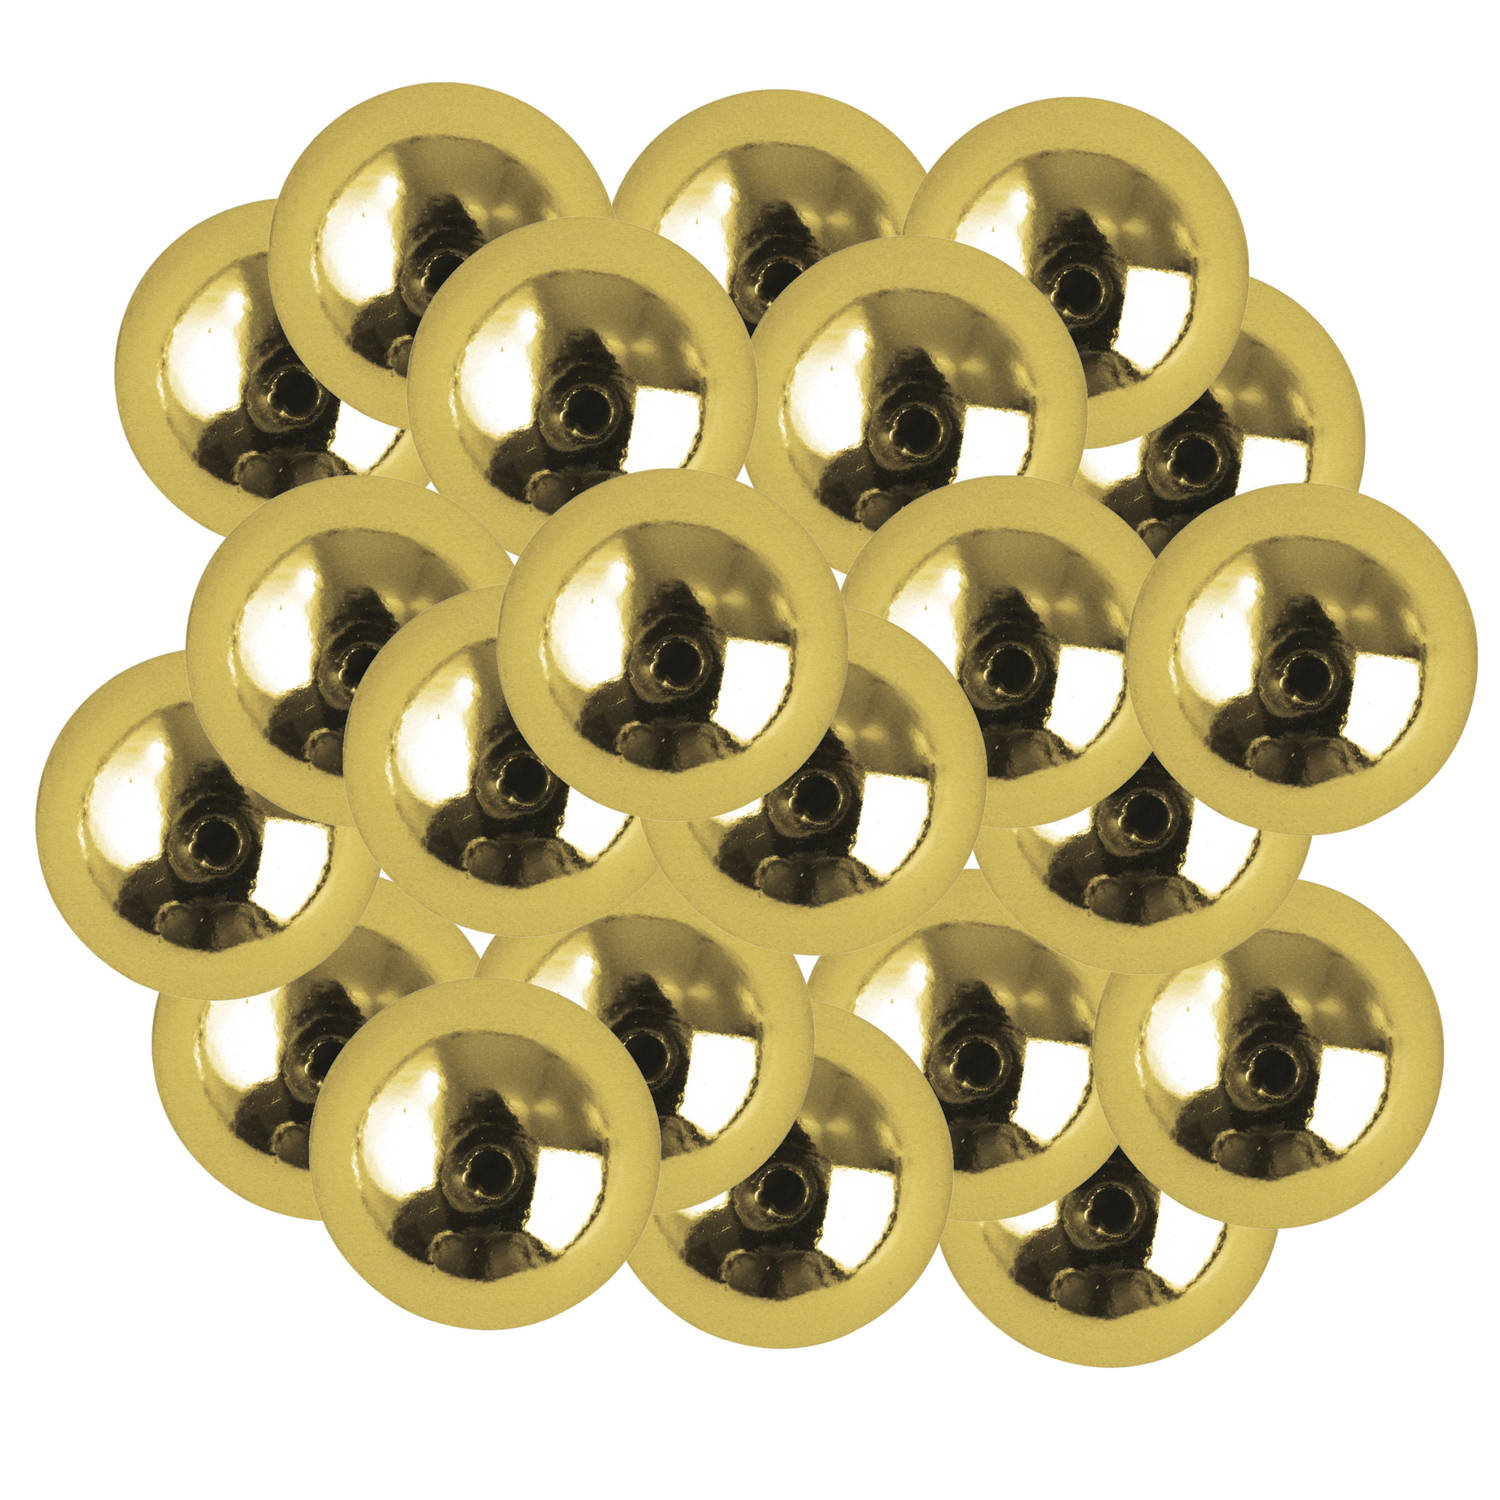 66x stuks gouden plastic hobby kralen van 10 mm Hobbykralen